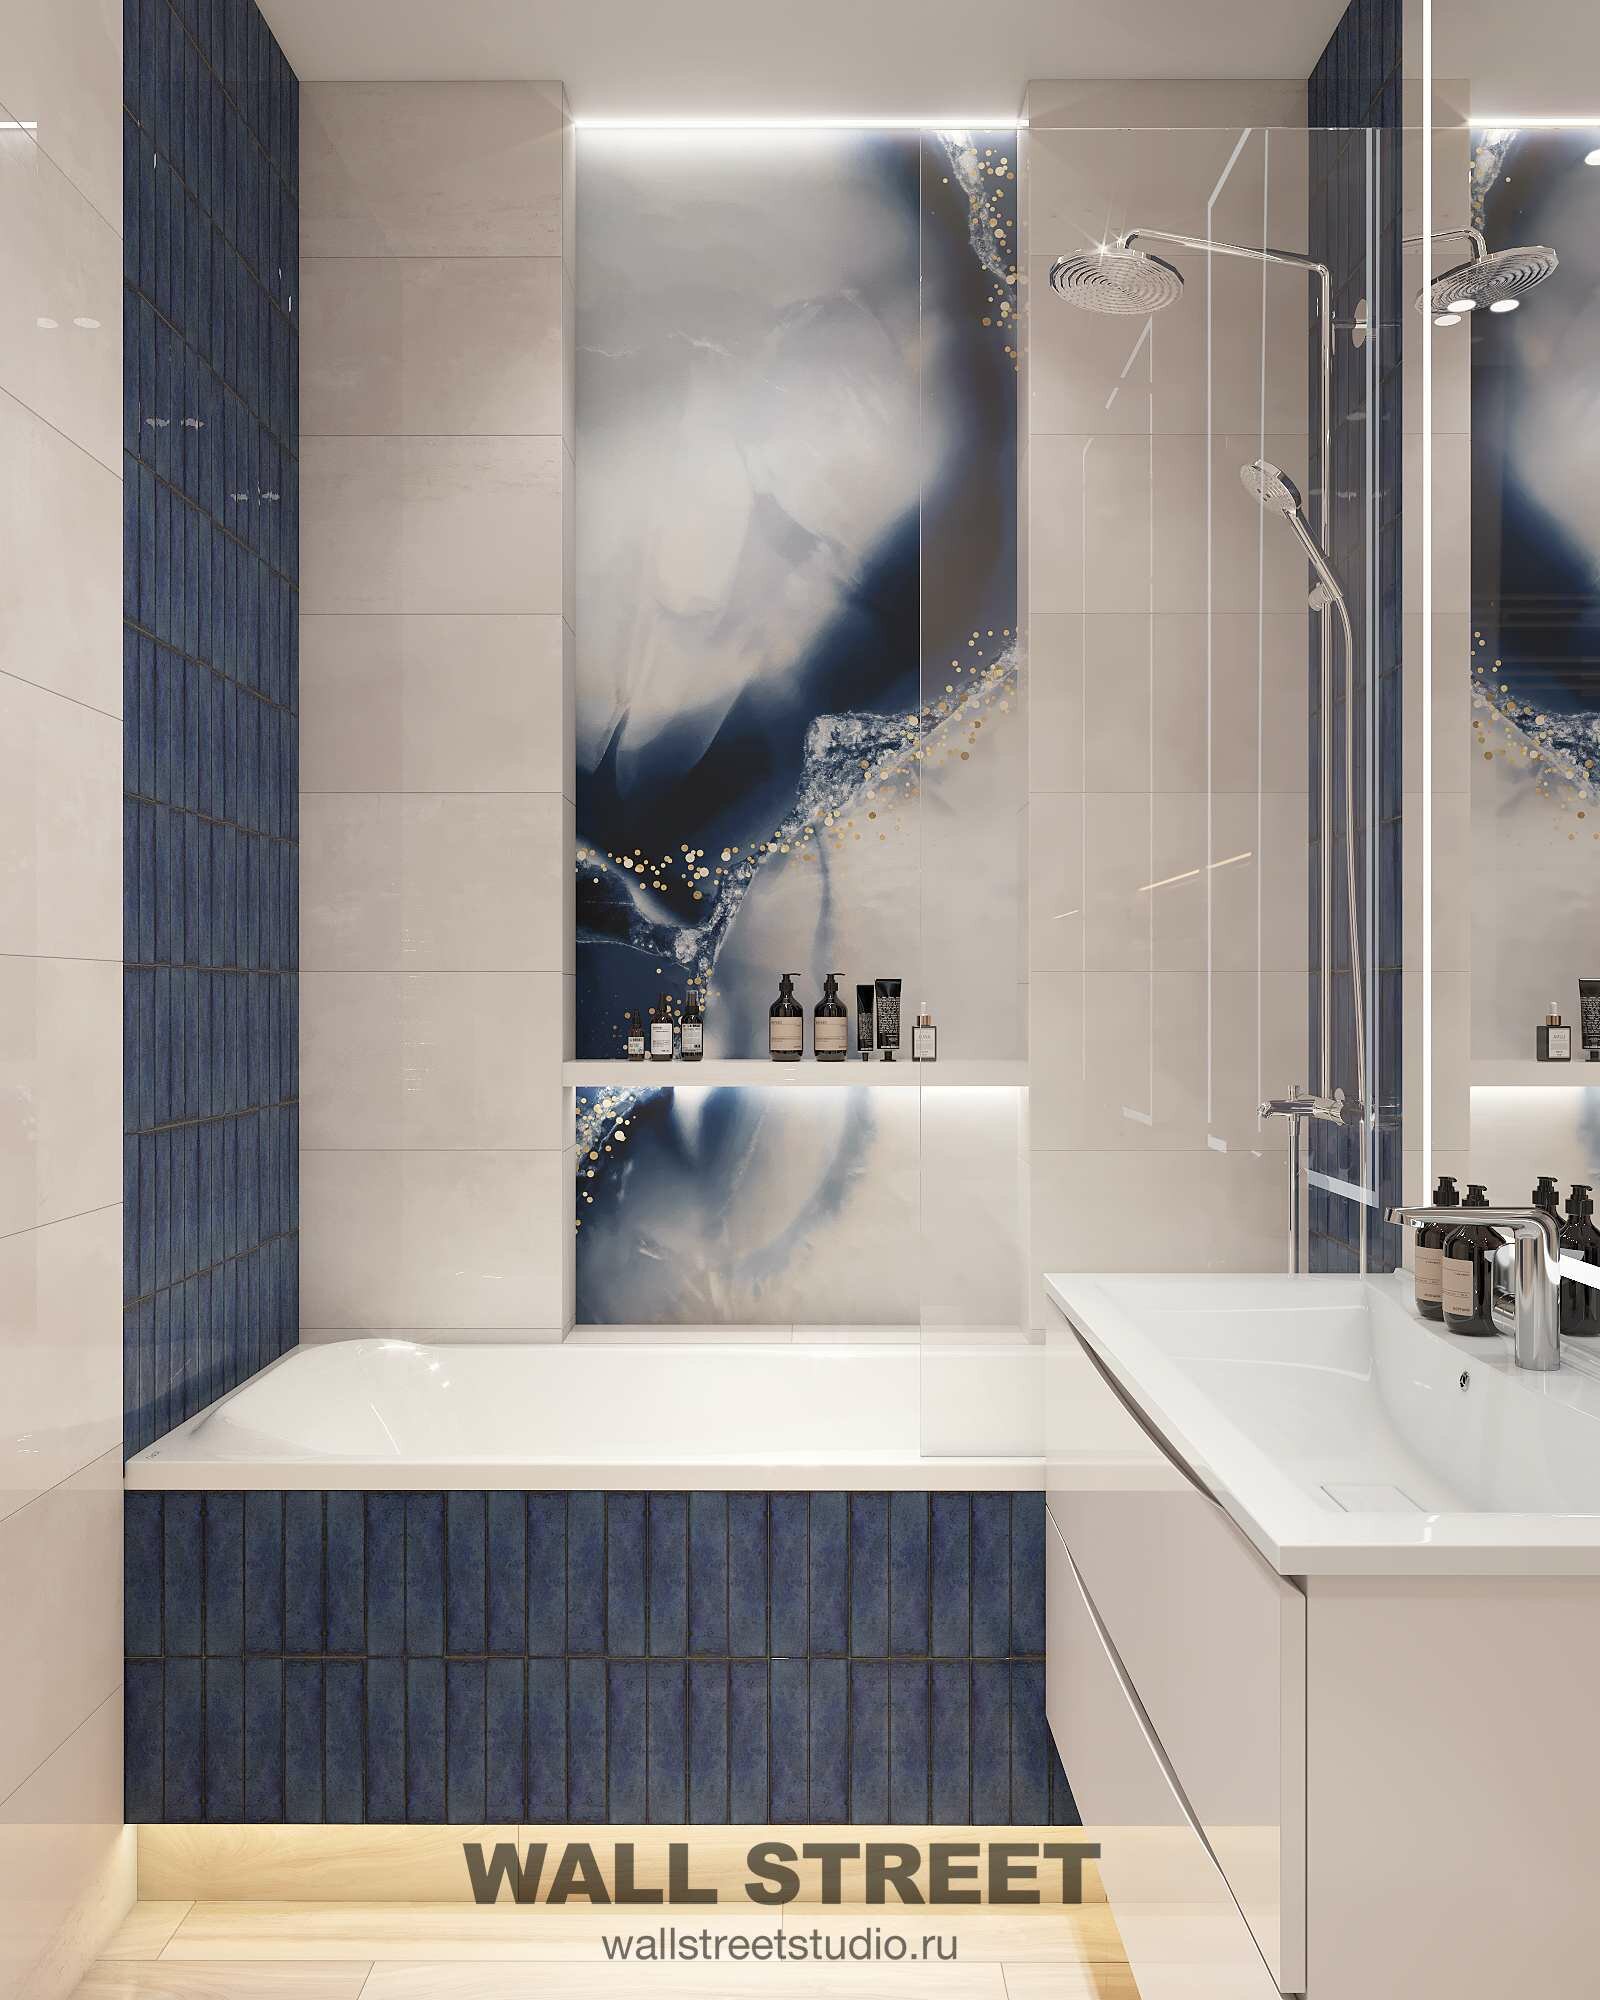 Хочу, чтобы в ванной комнате одну стену сделали необычной, то есть необложенную плиткой, а с какой-то другой отделкой, что может подойти?» —Яндекс Кью